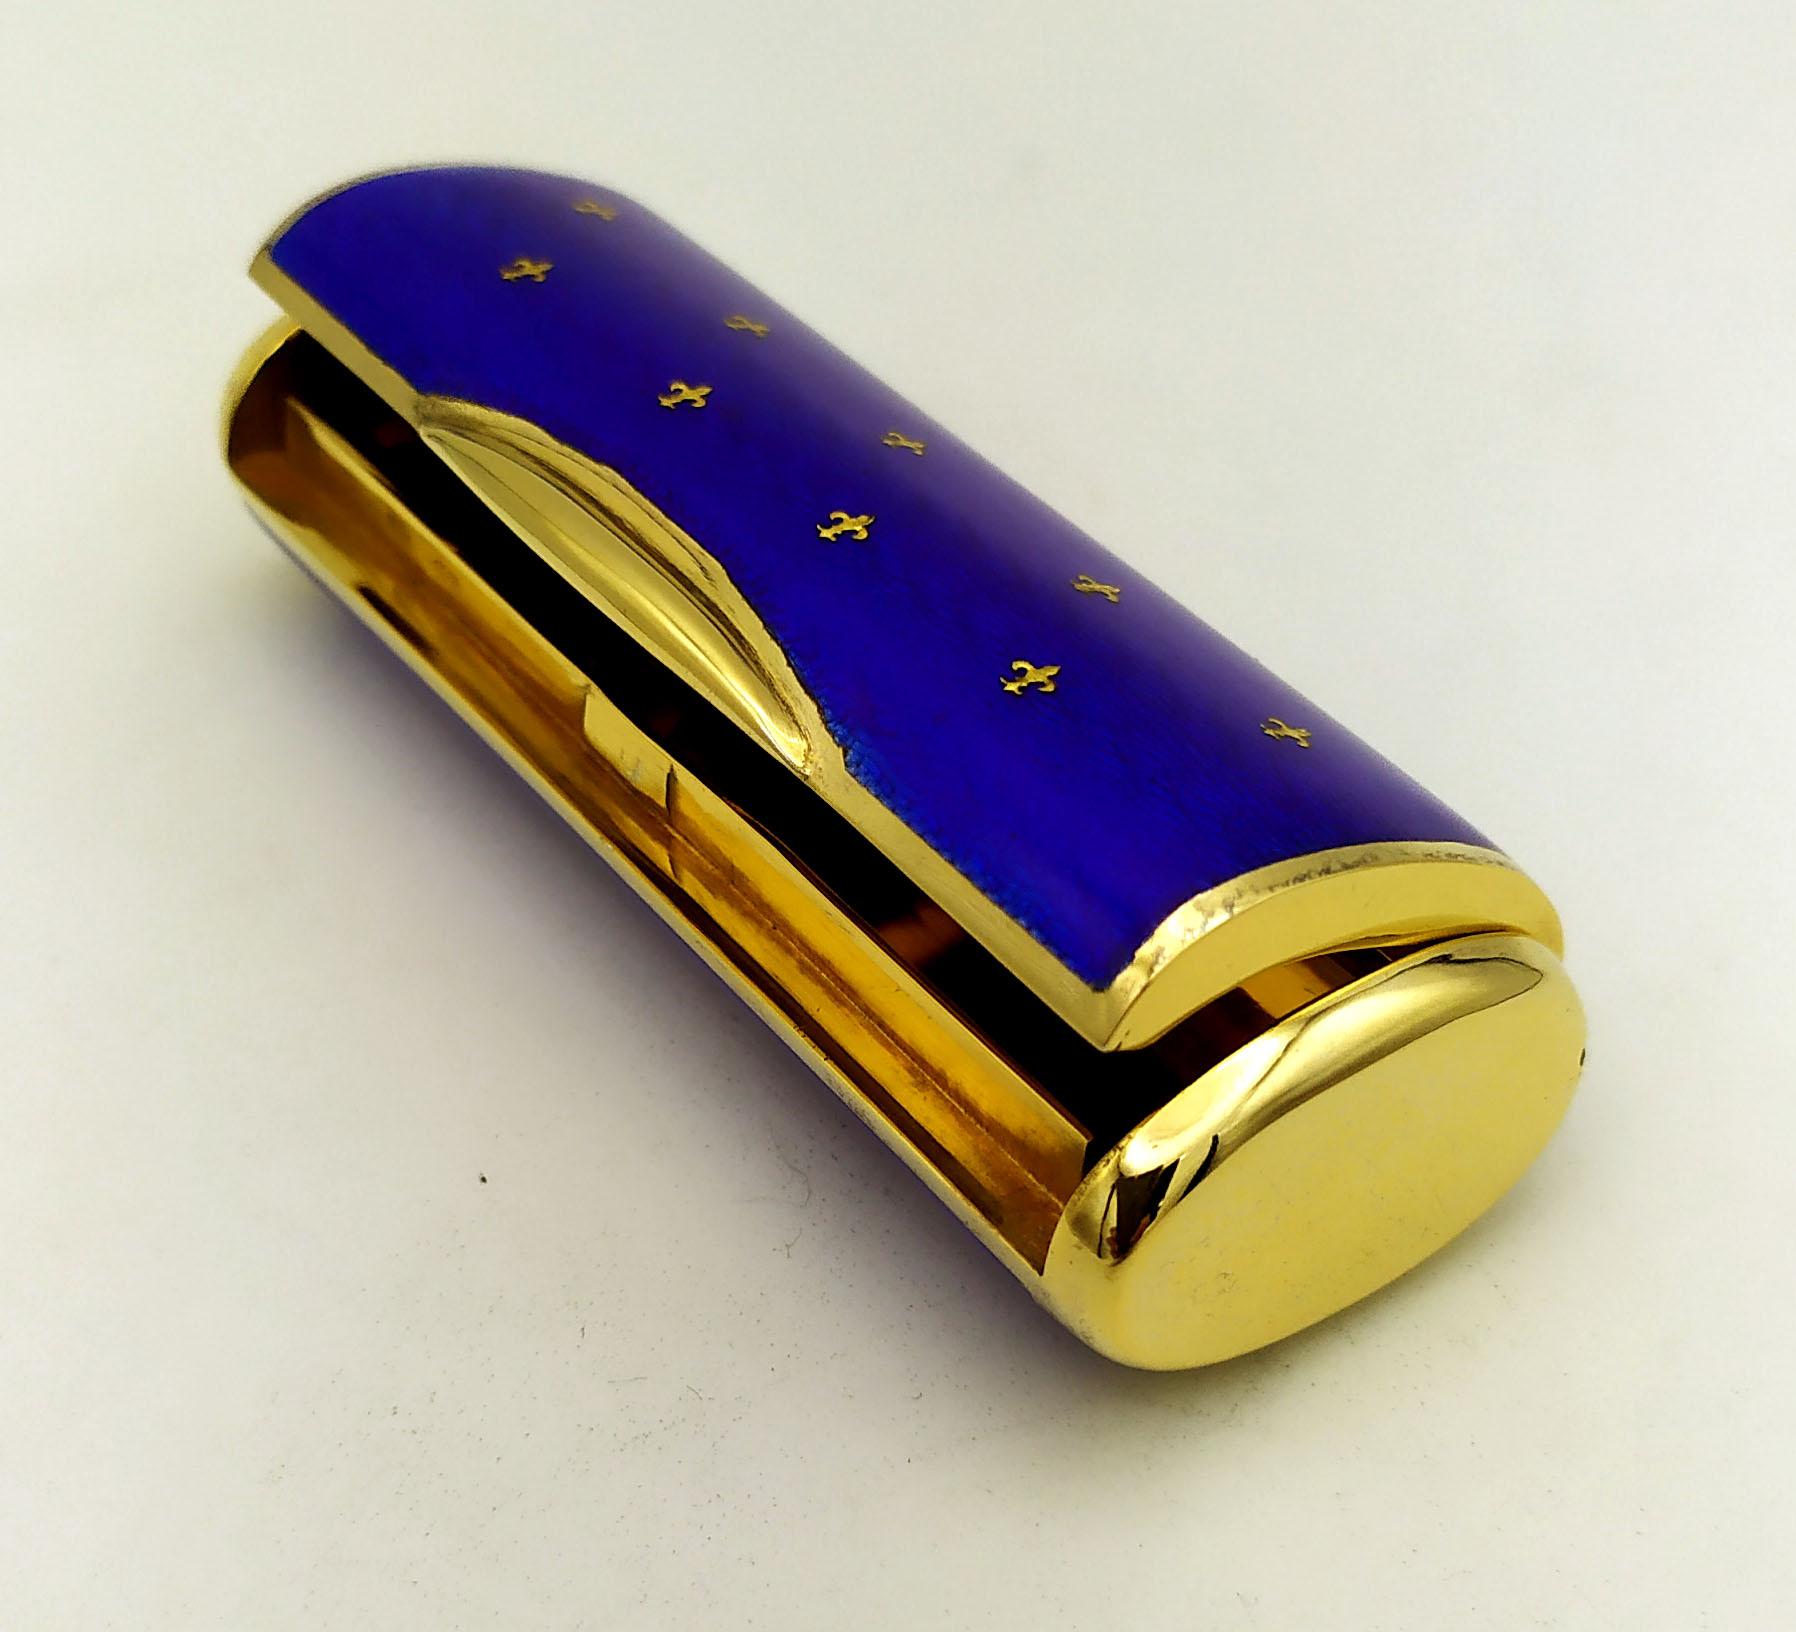 Tabatière rectangulaire de forme ovale en argent 925/1000 plaqué or avec émail cuit bleu translucide sur guillochè et avec insertion de paillons en or pur en forme de lys pour créer l'effet des draperies avec 